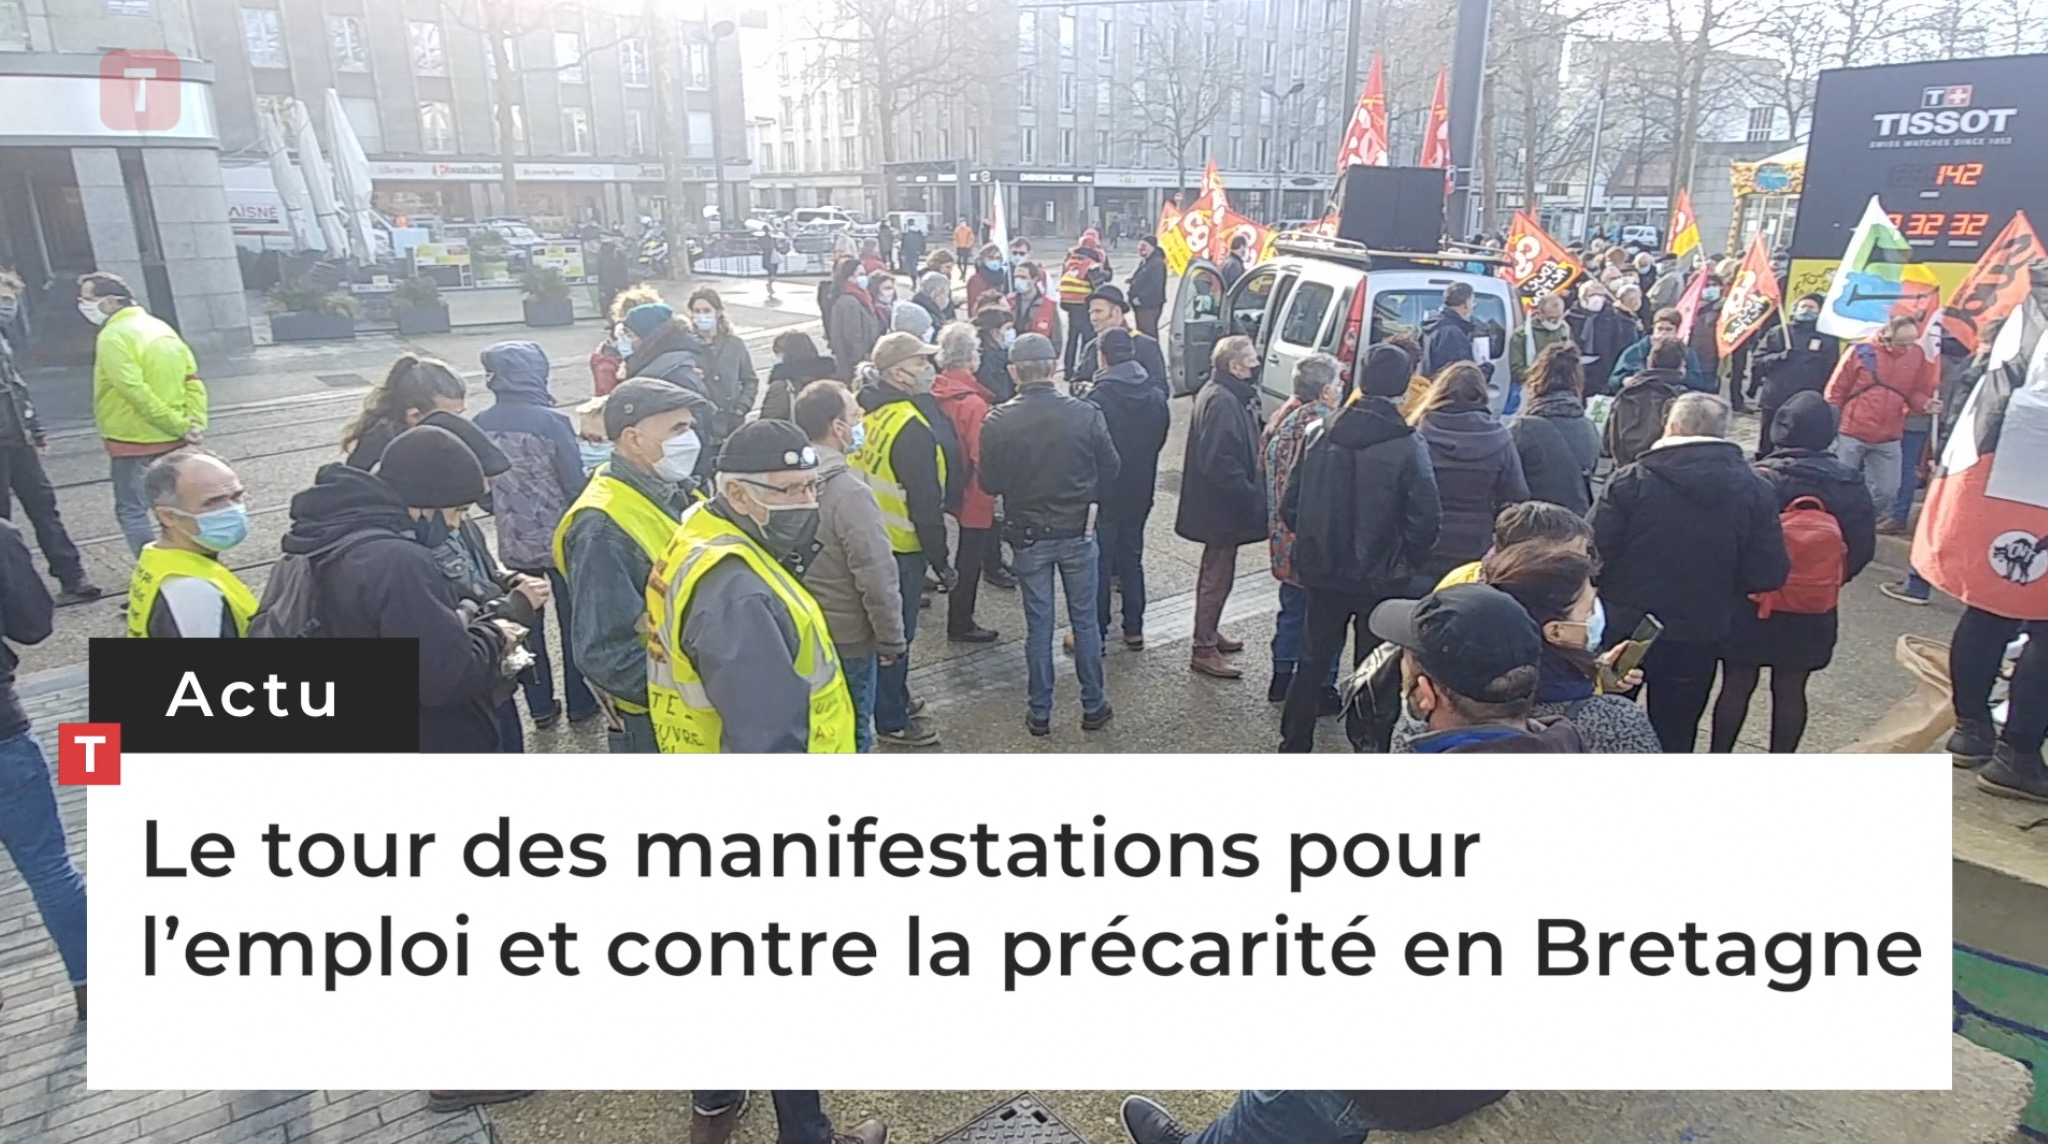 Le tour des manifestations pour l’emploi et contre la précarité en Bretagne (Le Télégramme)